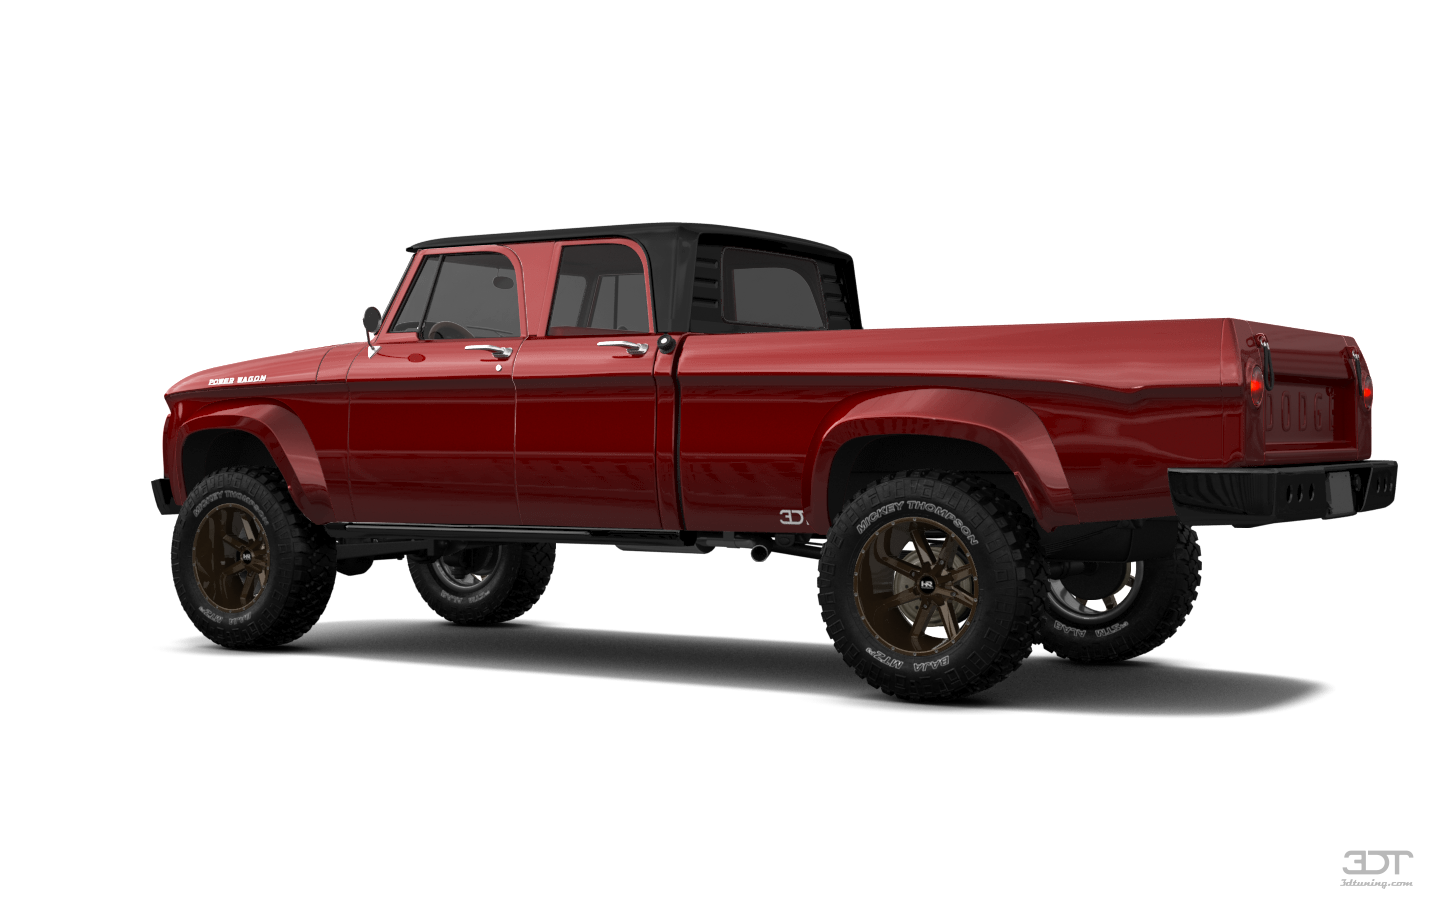 Dodge Power Wagon 4 Door pickup truck 1964